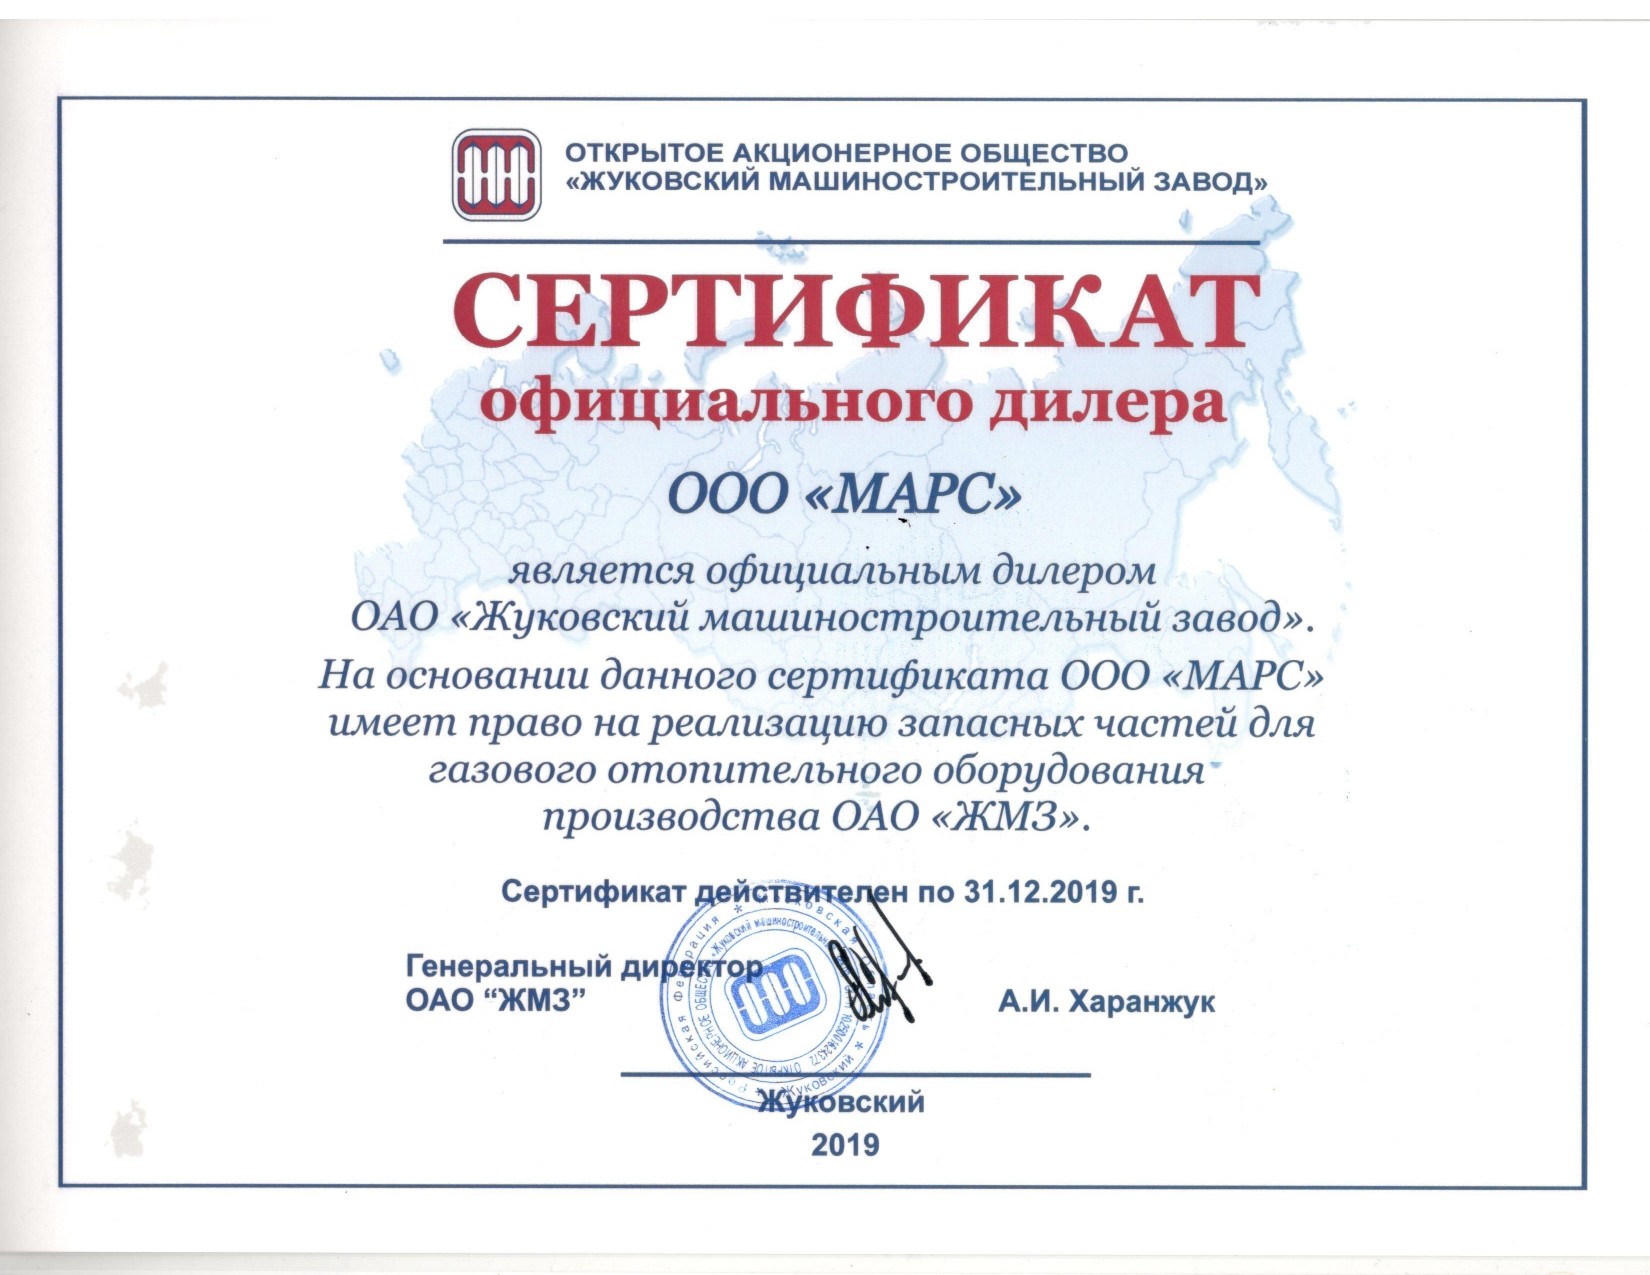 сертификат 2019_pages-to-jpg-0001.jpg